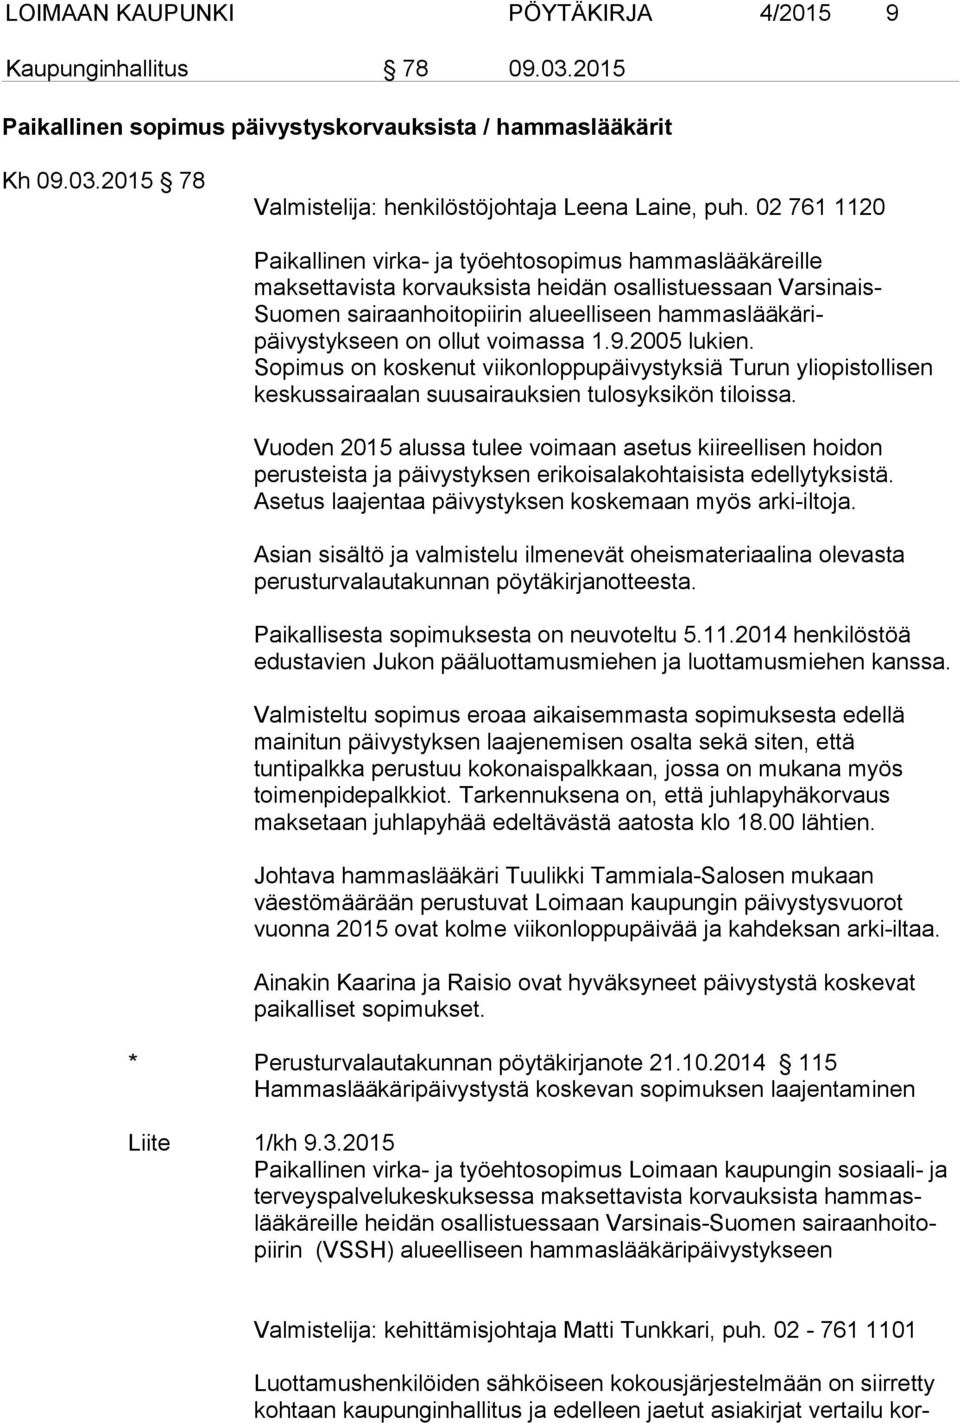 ollut voimassa 1.9.2005 lukien. Sopimus on koskenut viikonloppupäivystyksiä Turun yliopistollisen keskussairaalan suusairauksien tulosyksikön tiloissa.